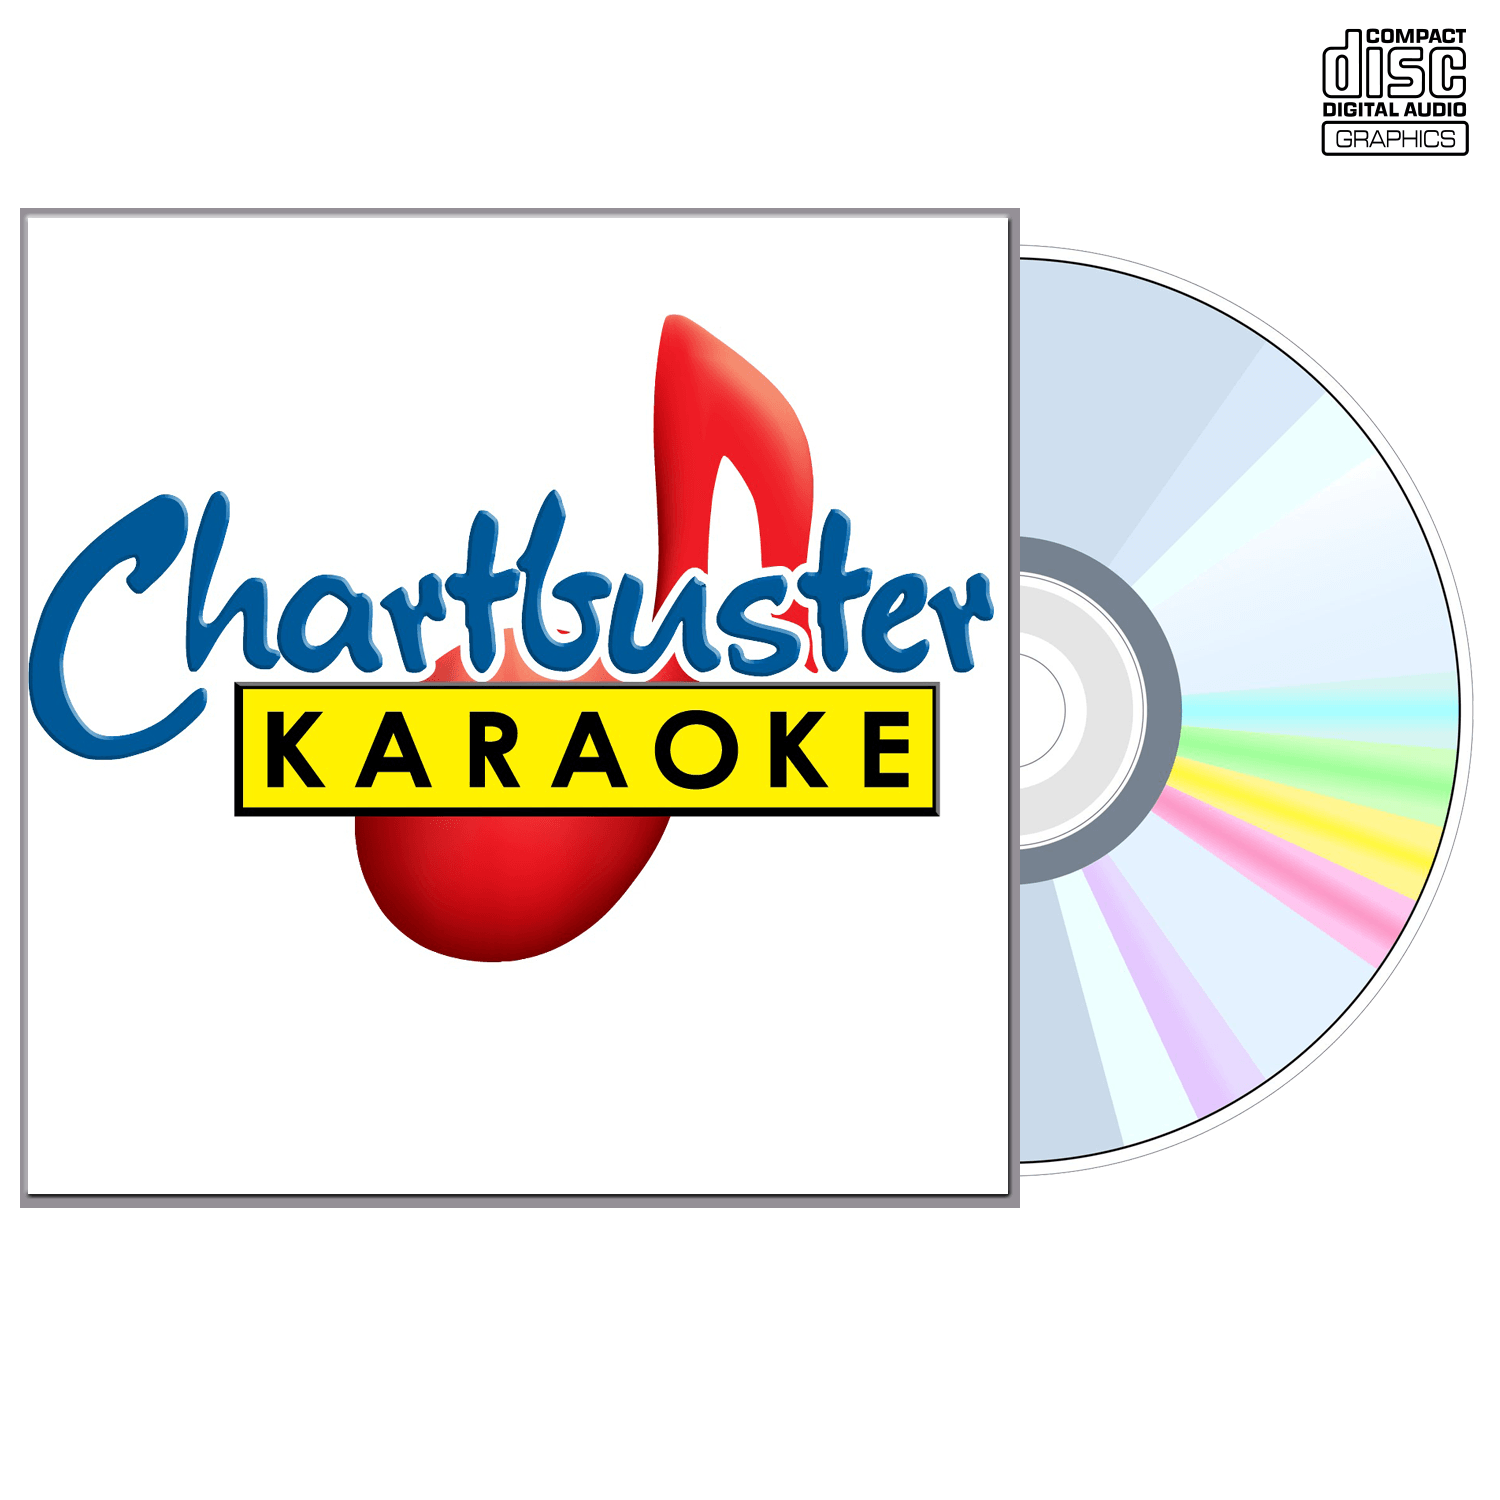 Alabama Vol 1 - CD+G - Chartbuster Karaoke - Karaoke Home Entertainment